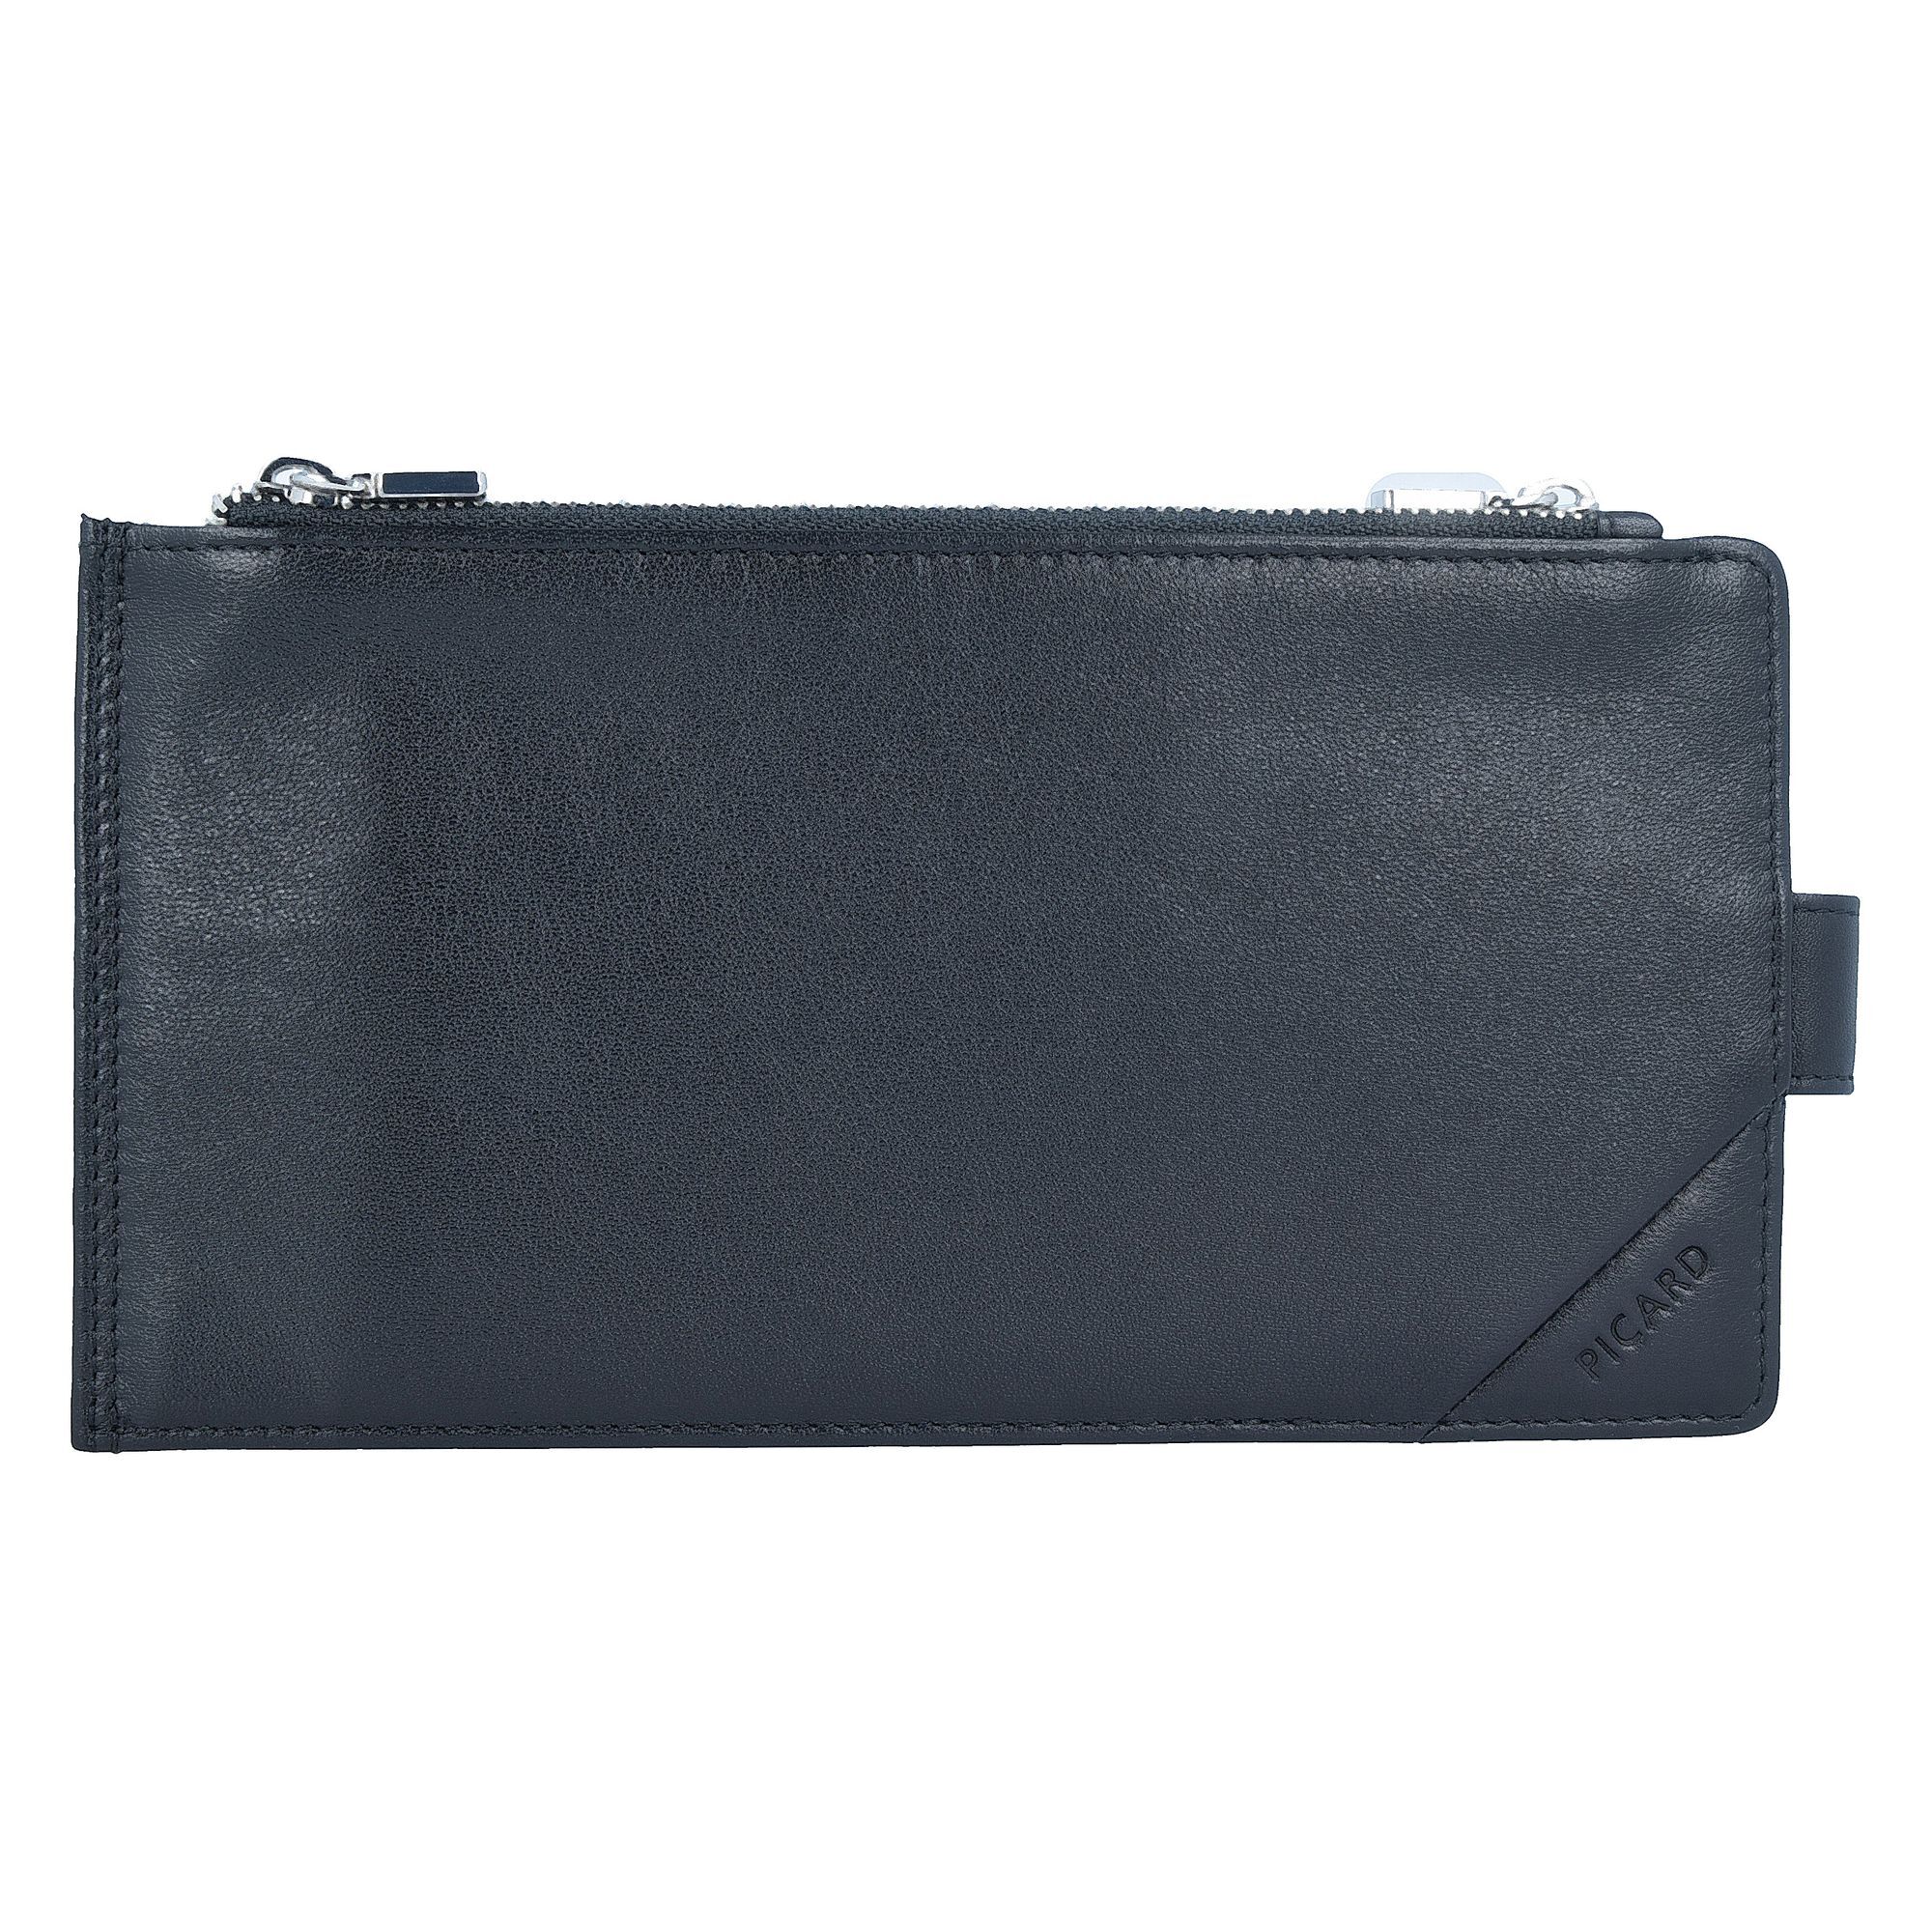 Кошелек PICARD Soft Safe Kreditkartenetui RFID Leder 19 см, черный